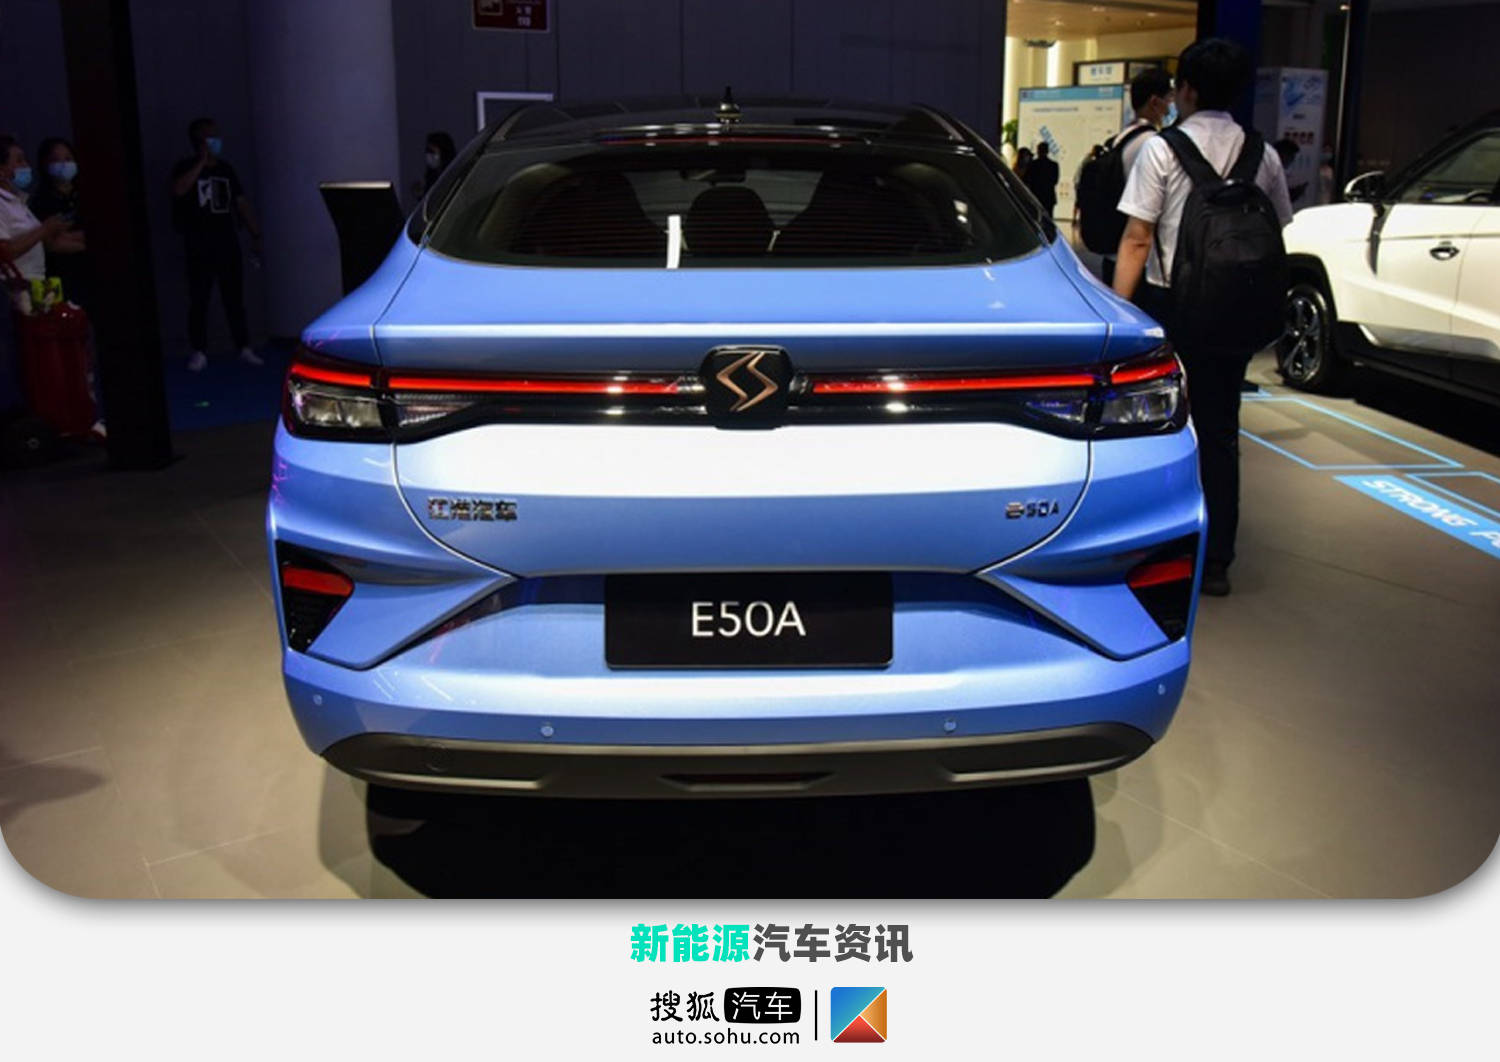 思皓e50a新增车型上市 售价16.19万/续航里程402km_搜狐汽车_搜狐网